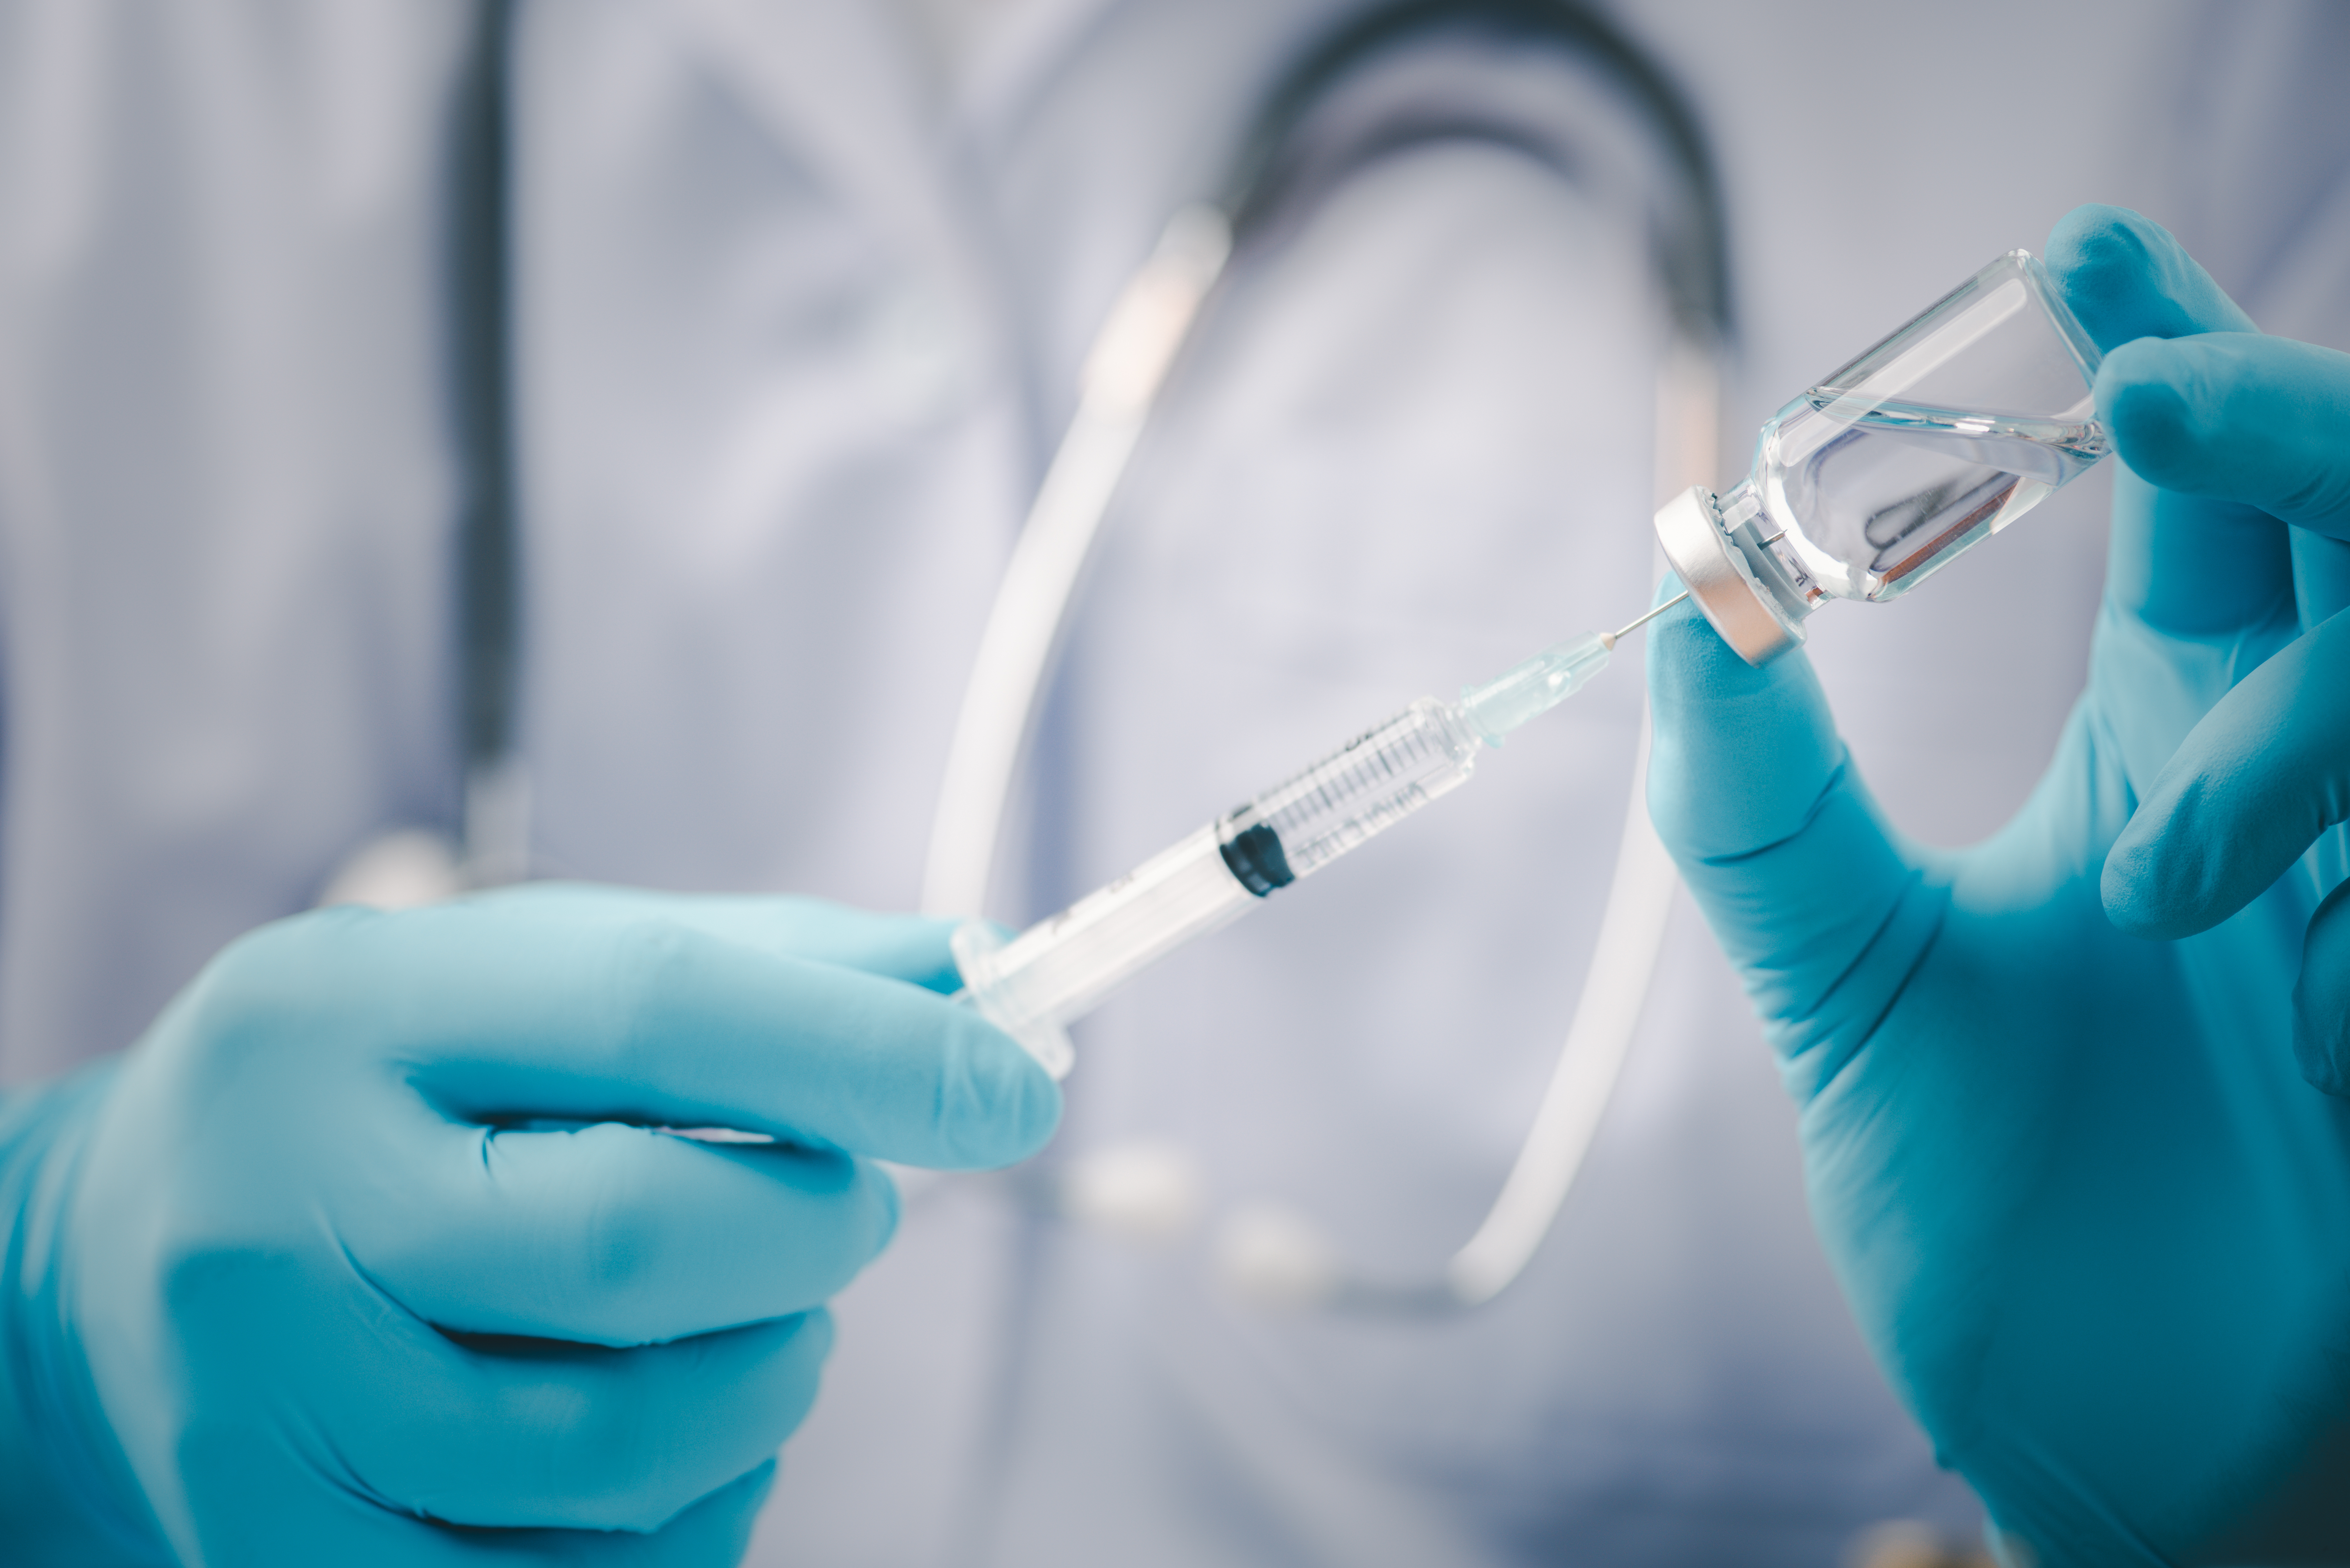     Vaccin anti-covid : le délai pour la dose de rappel passe mardi à 4 mois

